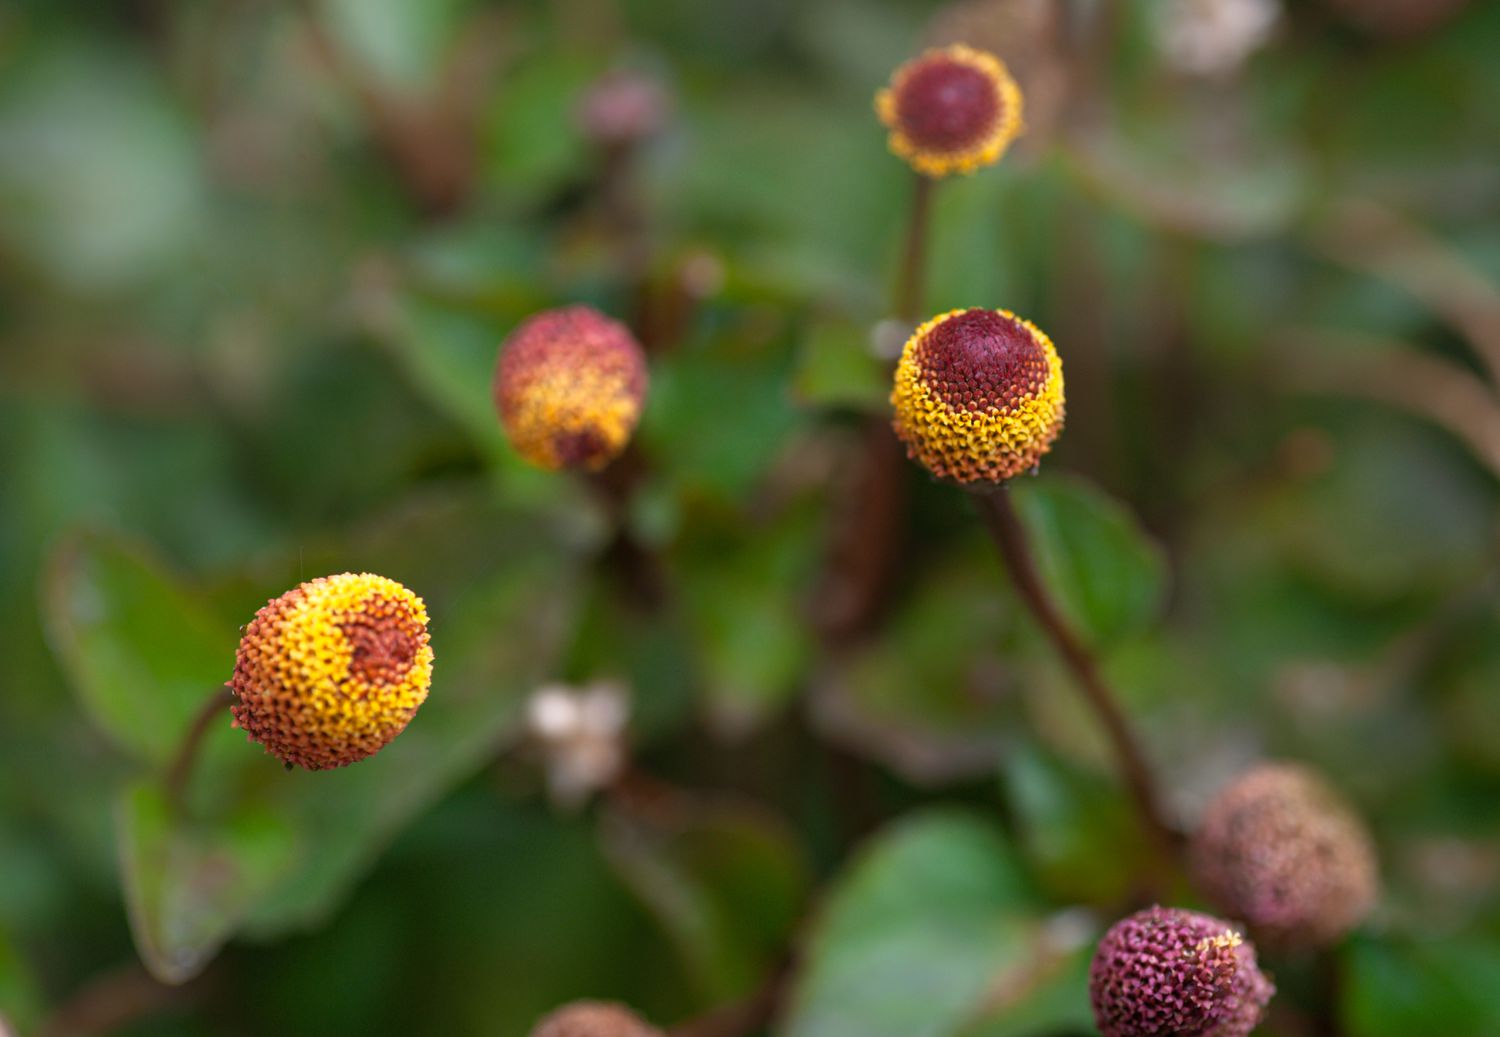 Augapfelpflanze mit gelben und weinroten Blüten an dünnem Stiel in Nahaufnahme 